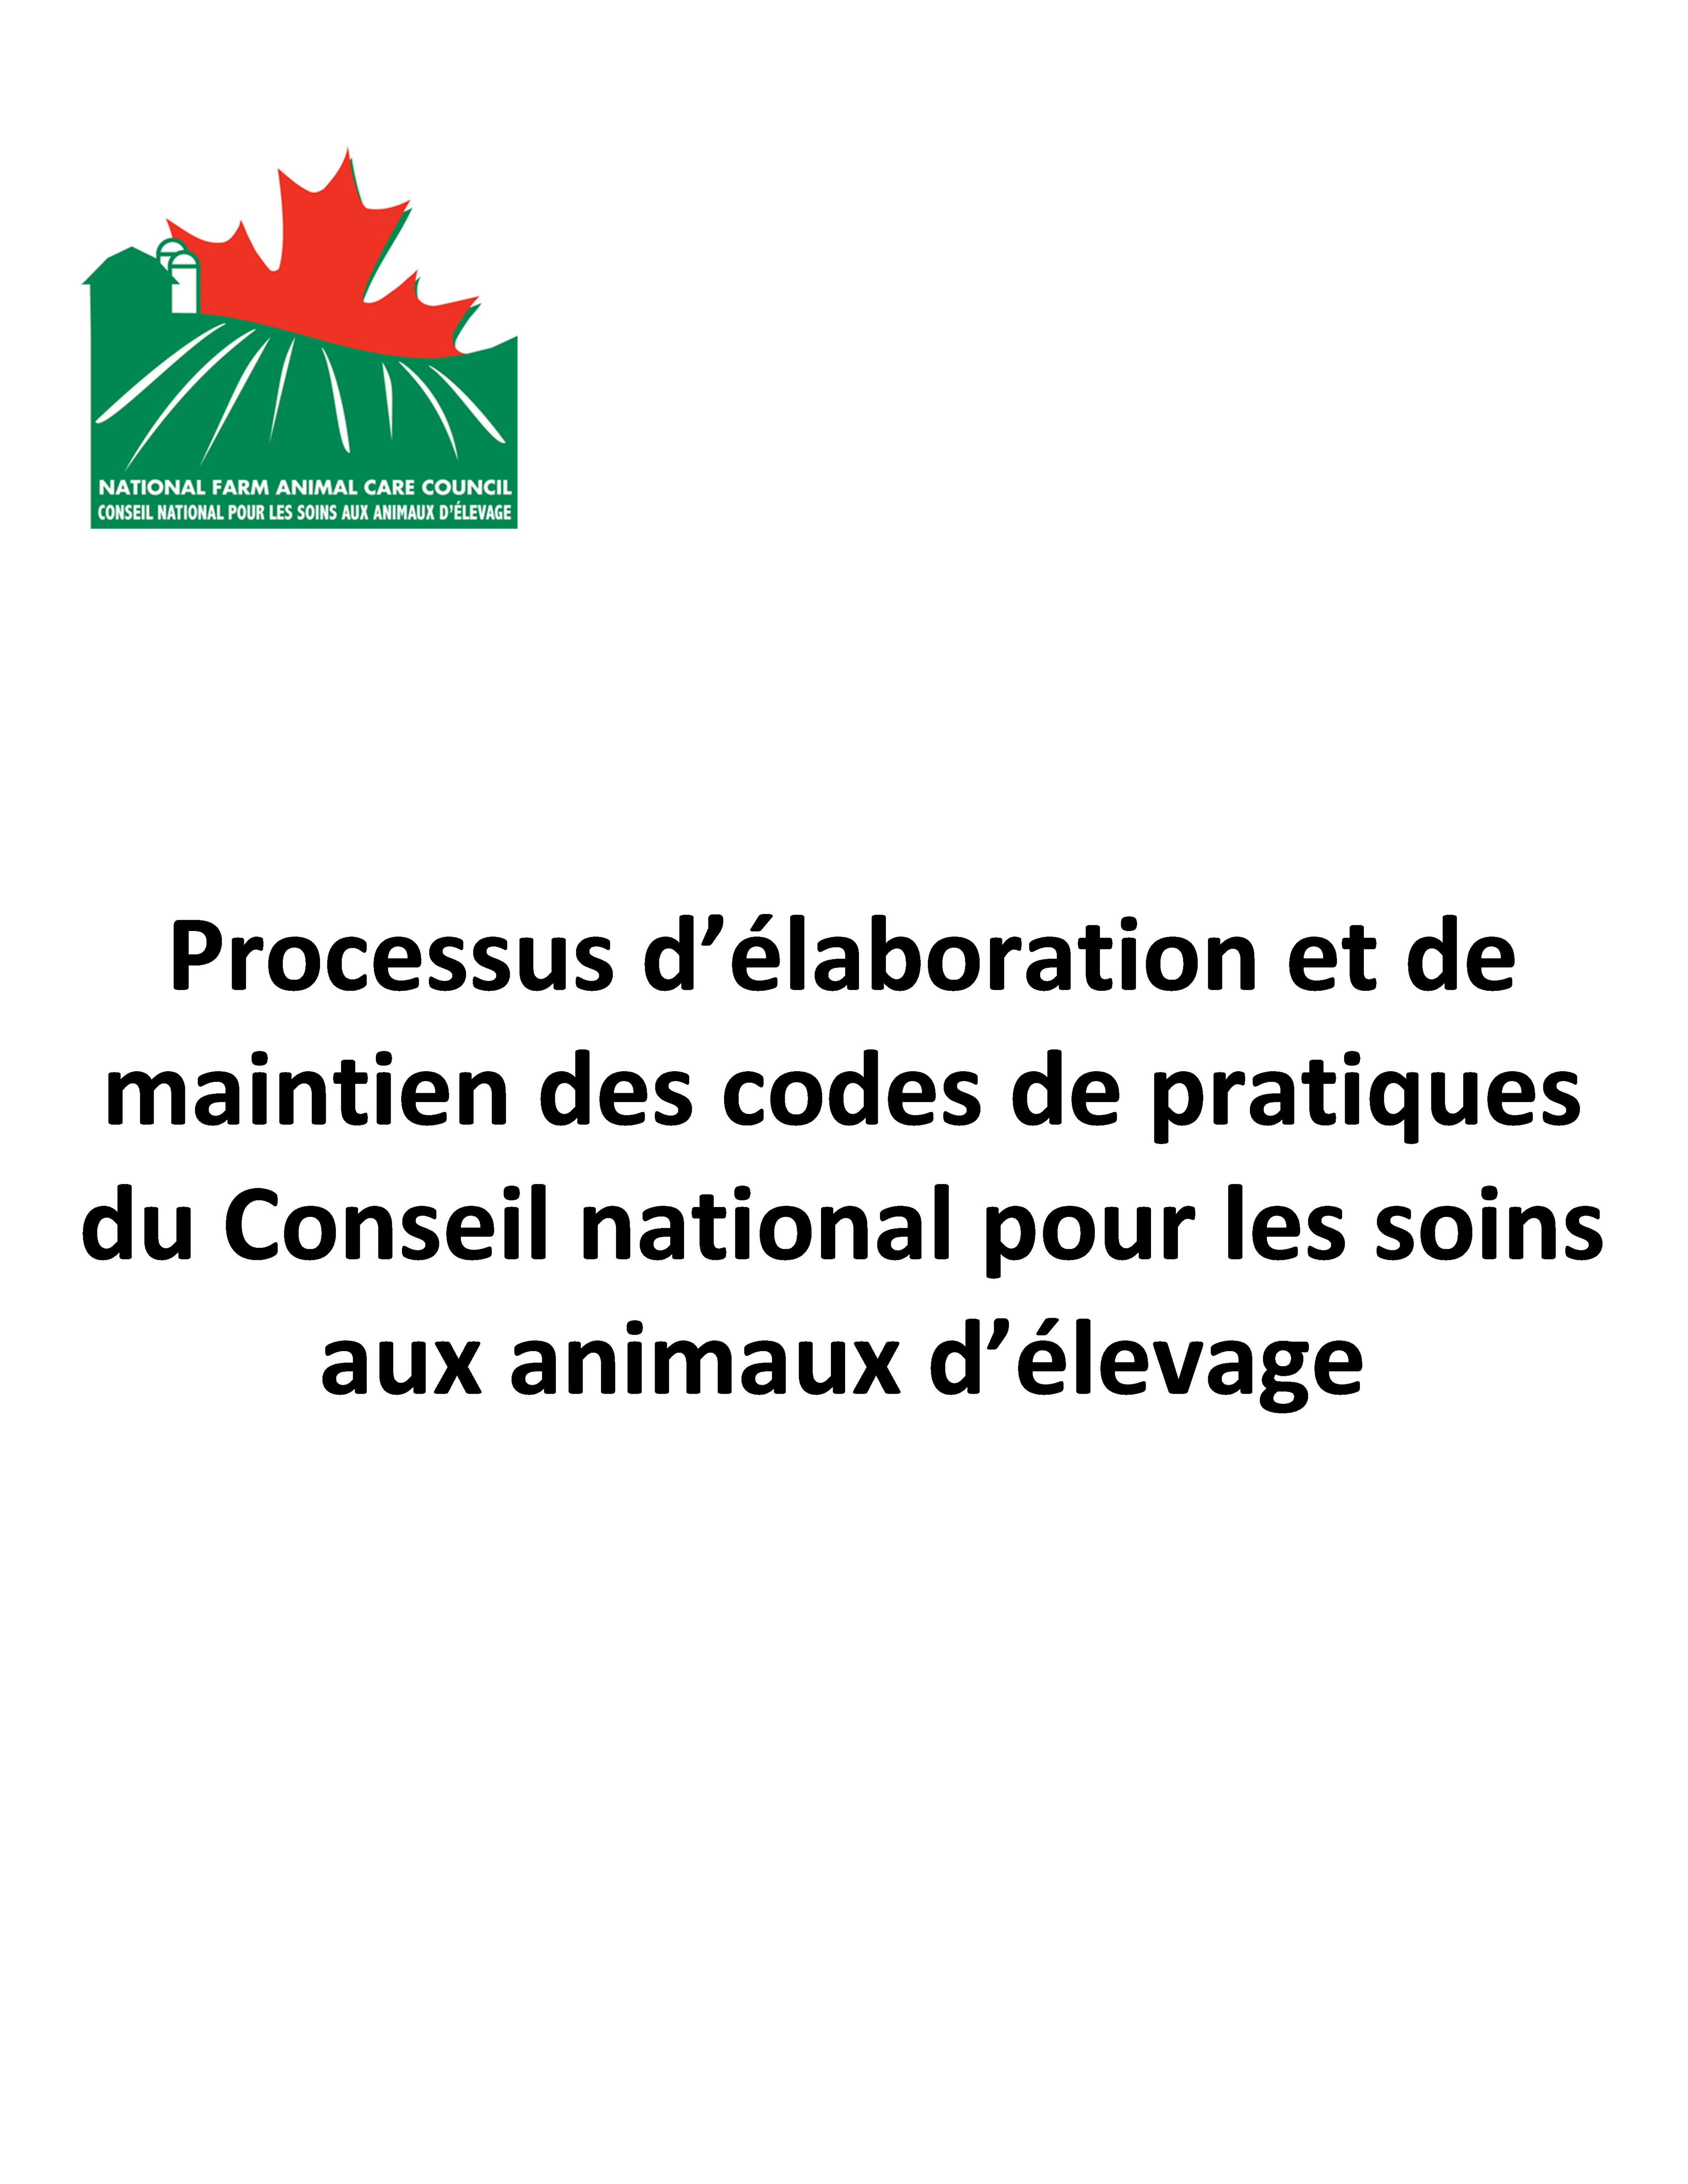 Processus d’élaboration et de maintien des codes de pratiques du Conseil national pour les soins aux animaux d’élevage